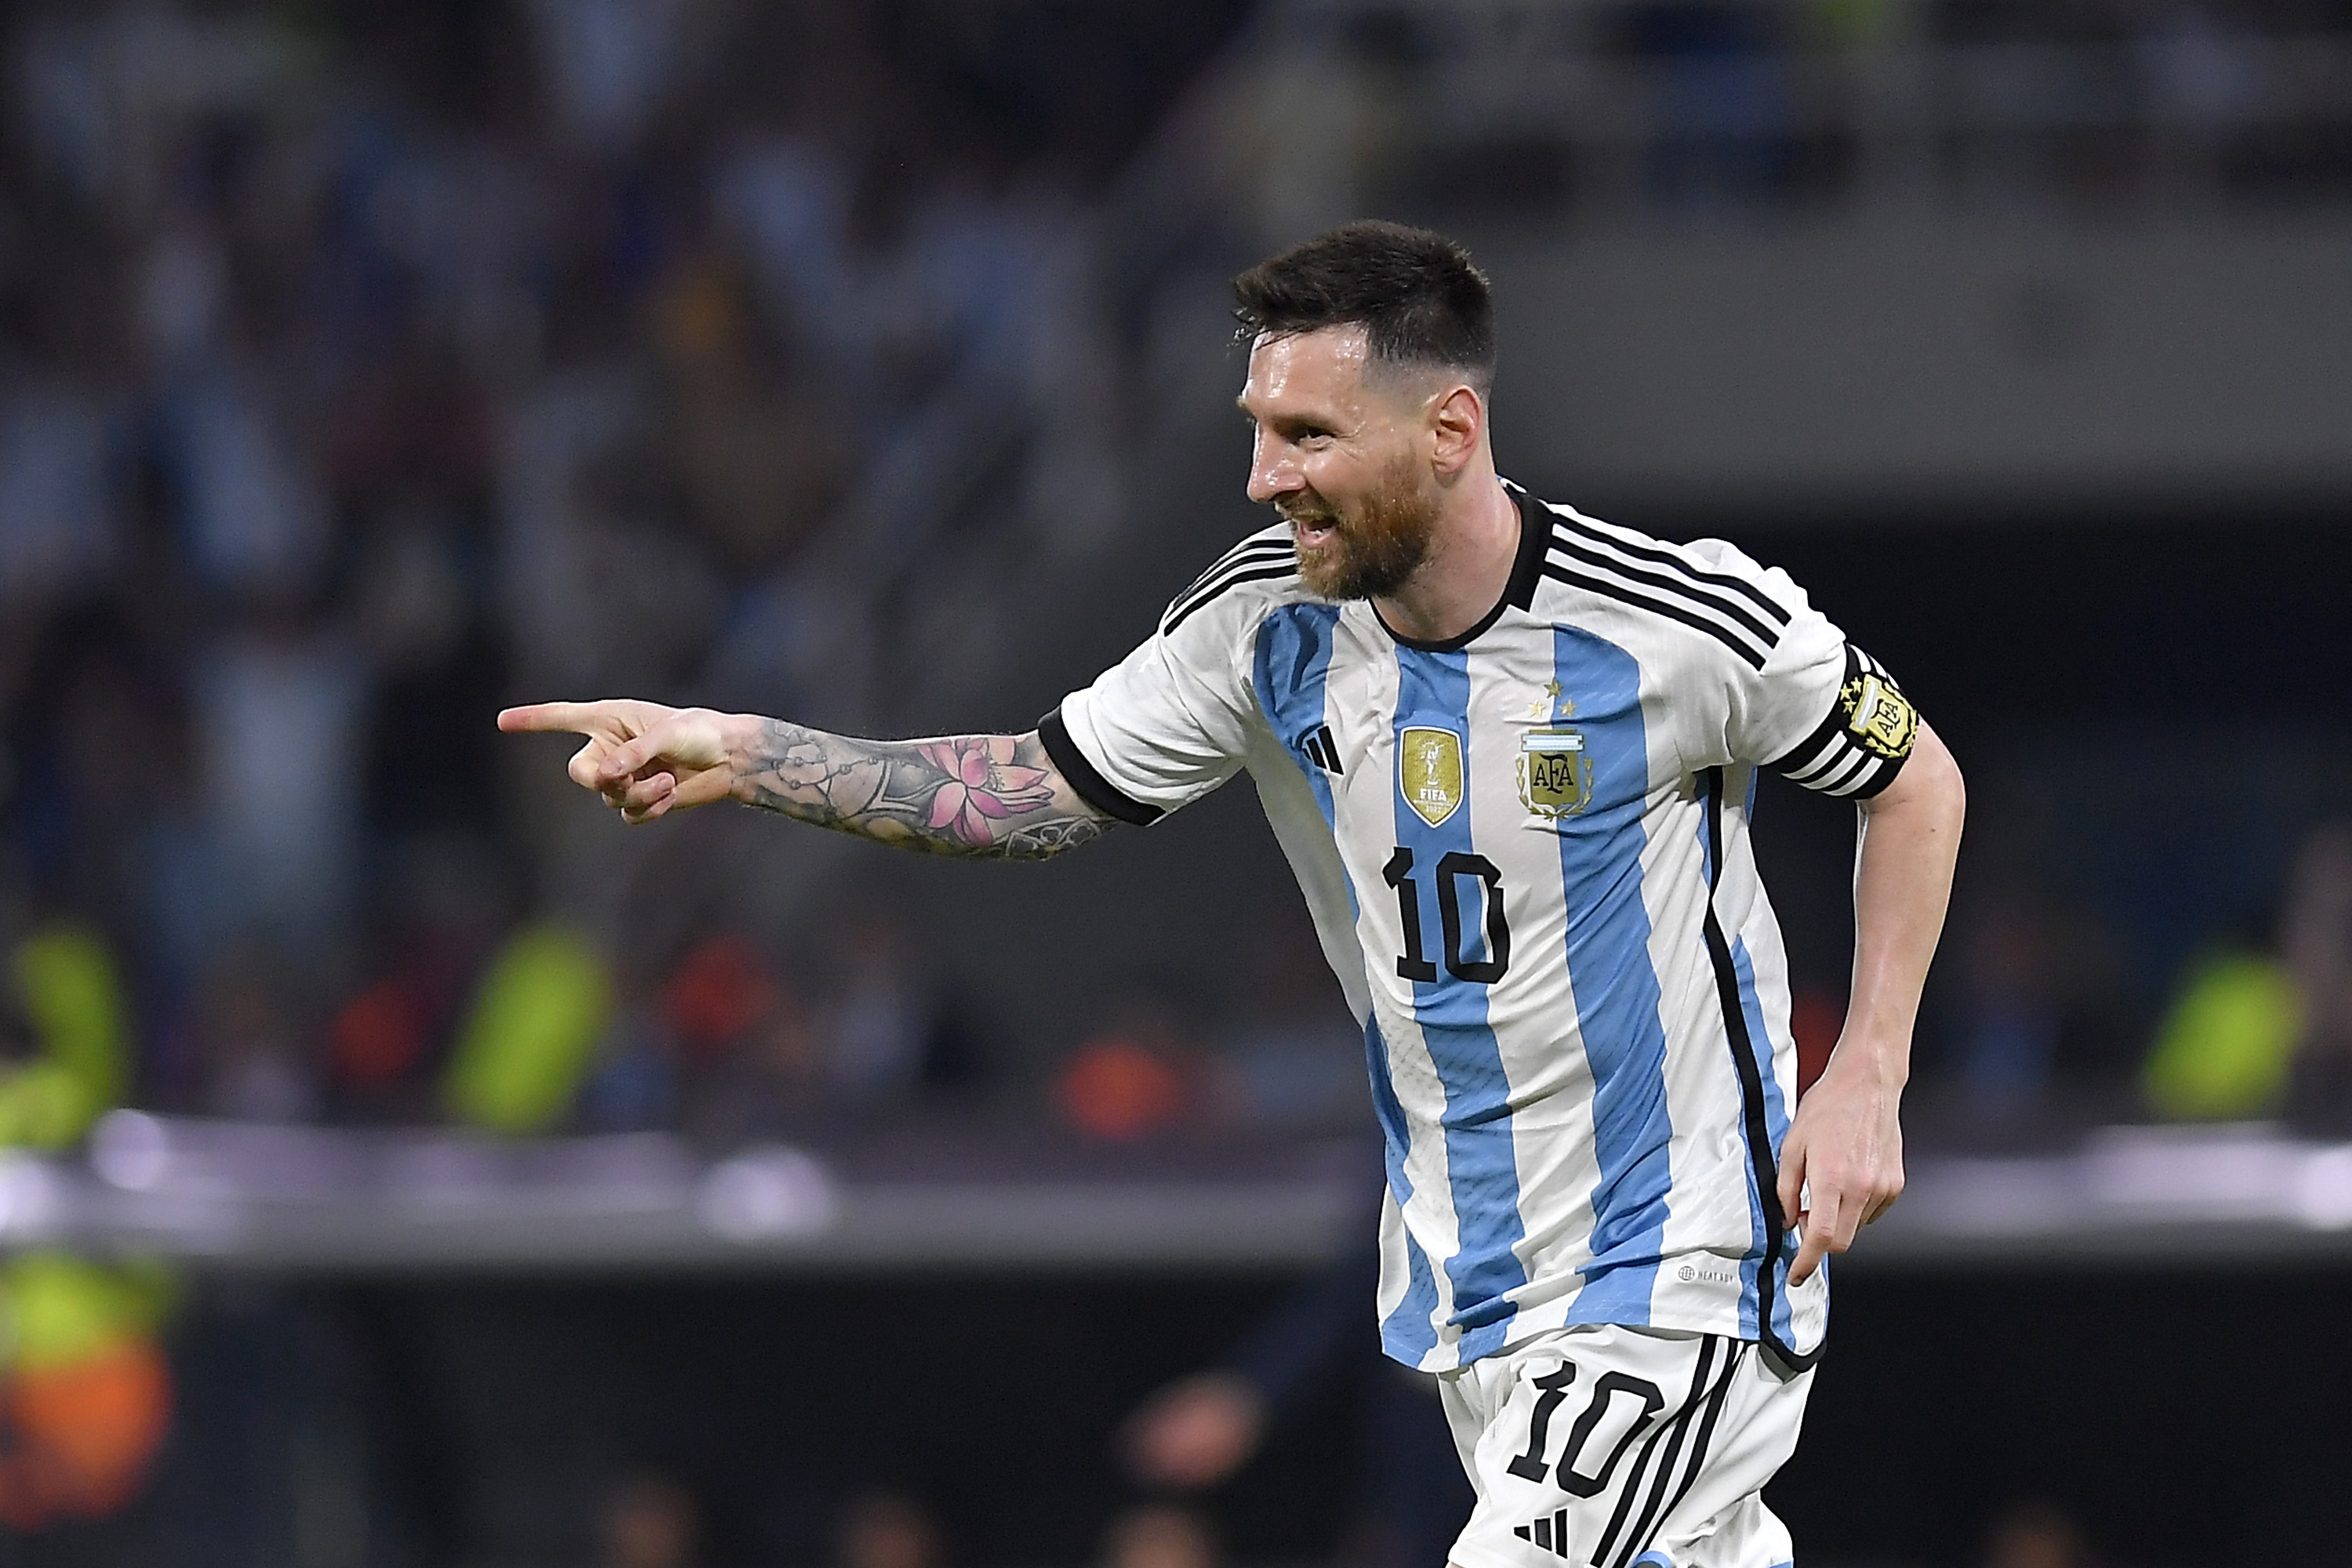 VIDEO | ¡Derechazo récord! Messi clavó un golazo y llegó a su tanto número 100 en la Selección